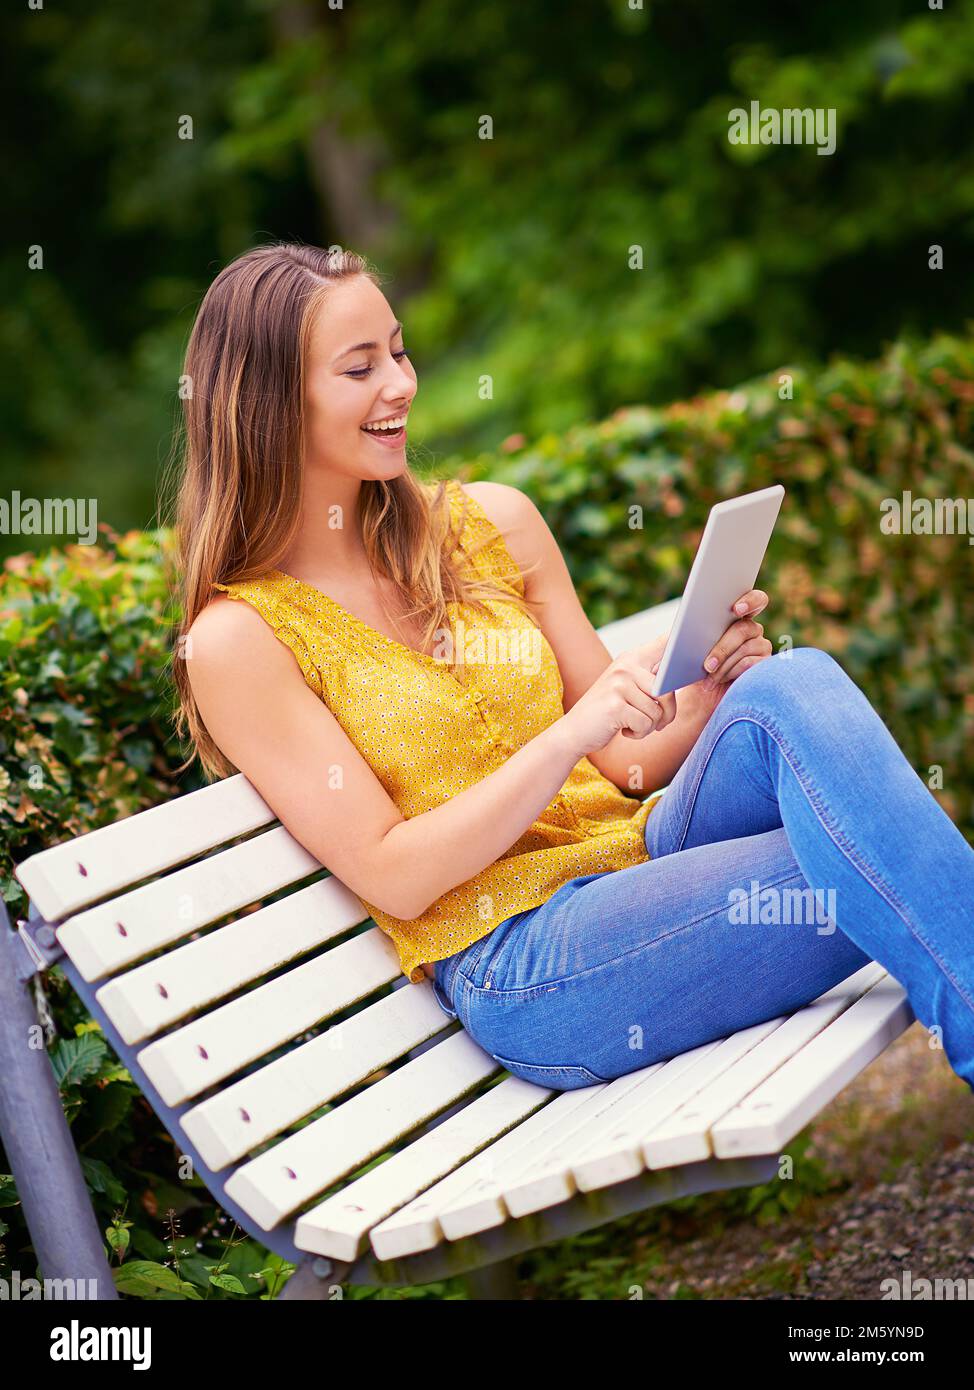 La technologie moderne au contact n'a jamais été aussi simple. une jeune femme utilisant une tablette numérique sur un banc de parc. Banque D'Images